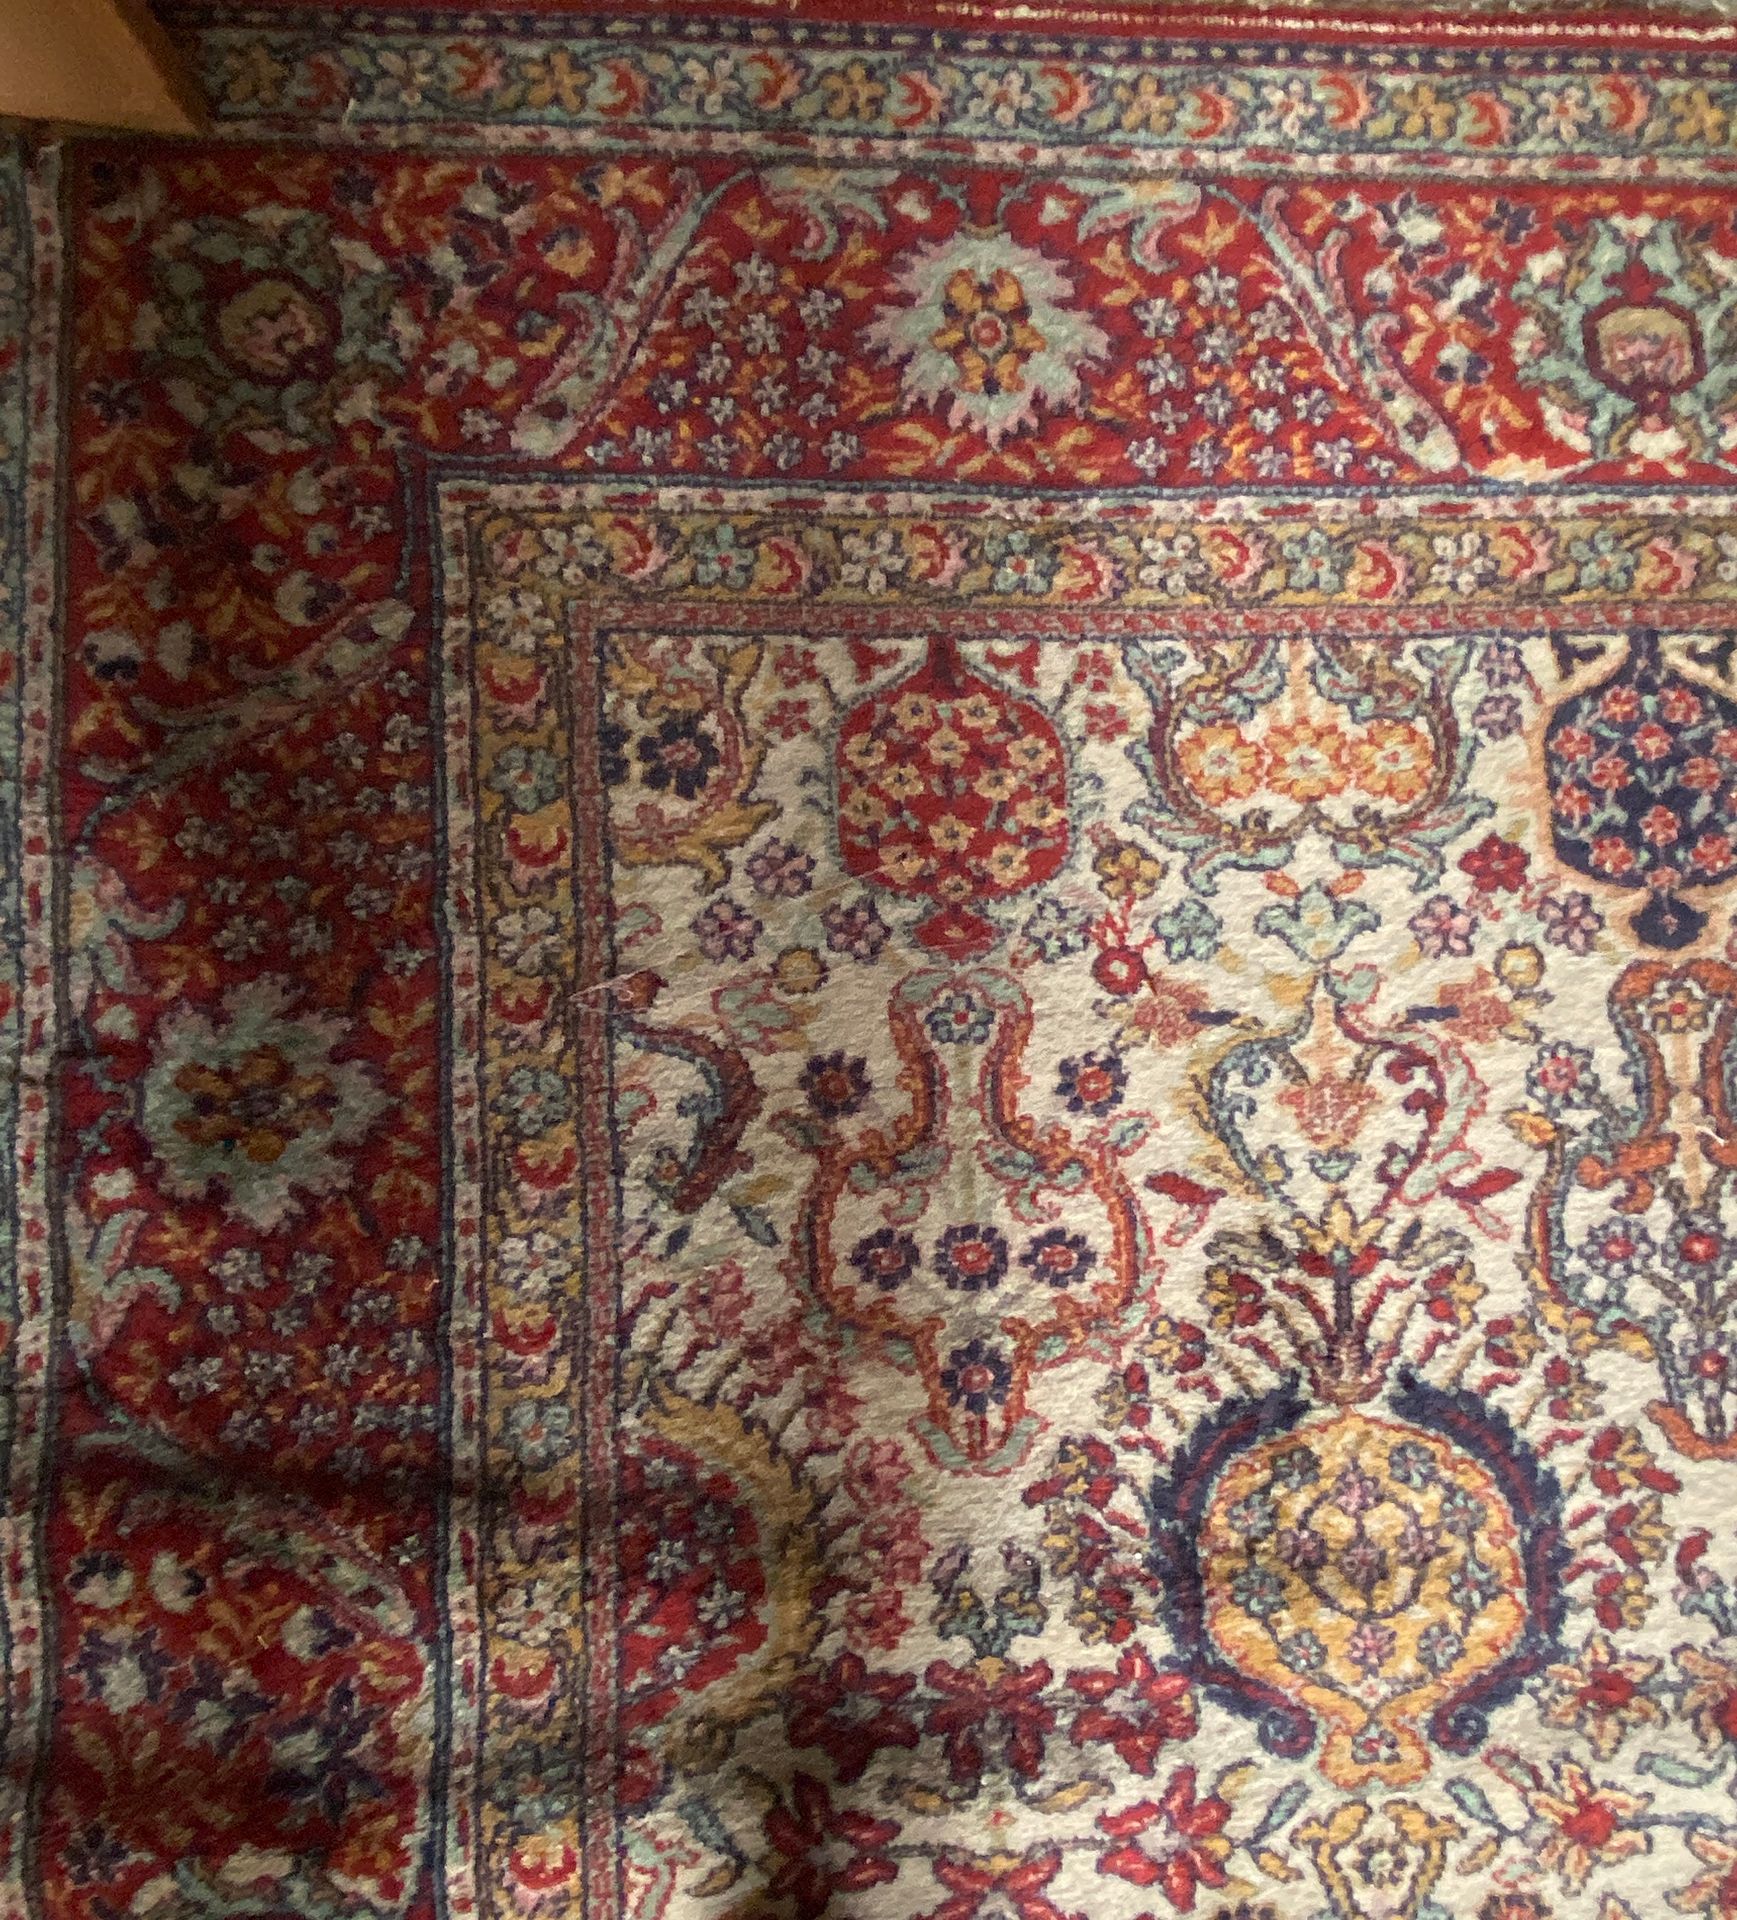 Null Teppiche aus dem Orient

(Verkauf 20. Januar 2022)